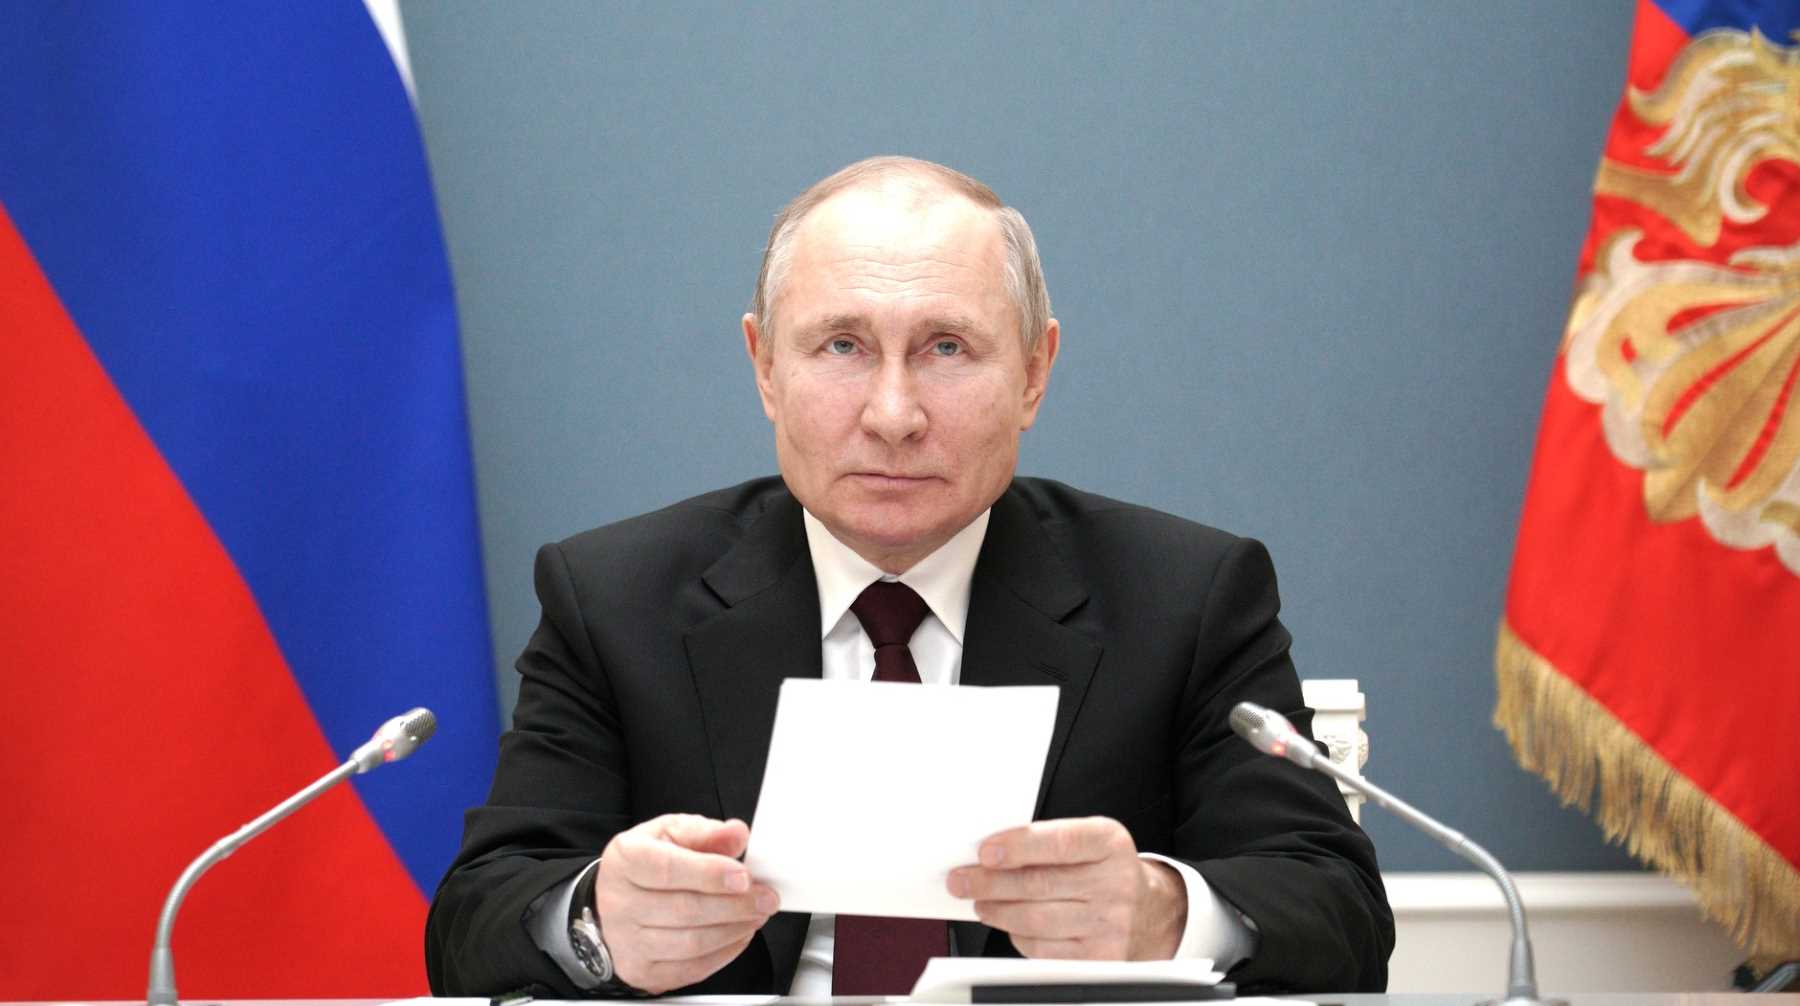 Глава государства поздравил россиян с седьмой годовщиной присоединения полуострова к России Фото: © Global Look Press / Kremlin Pool